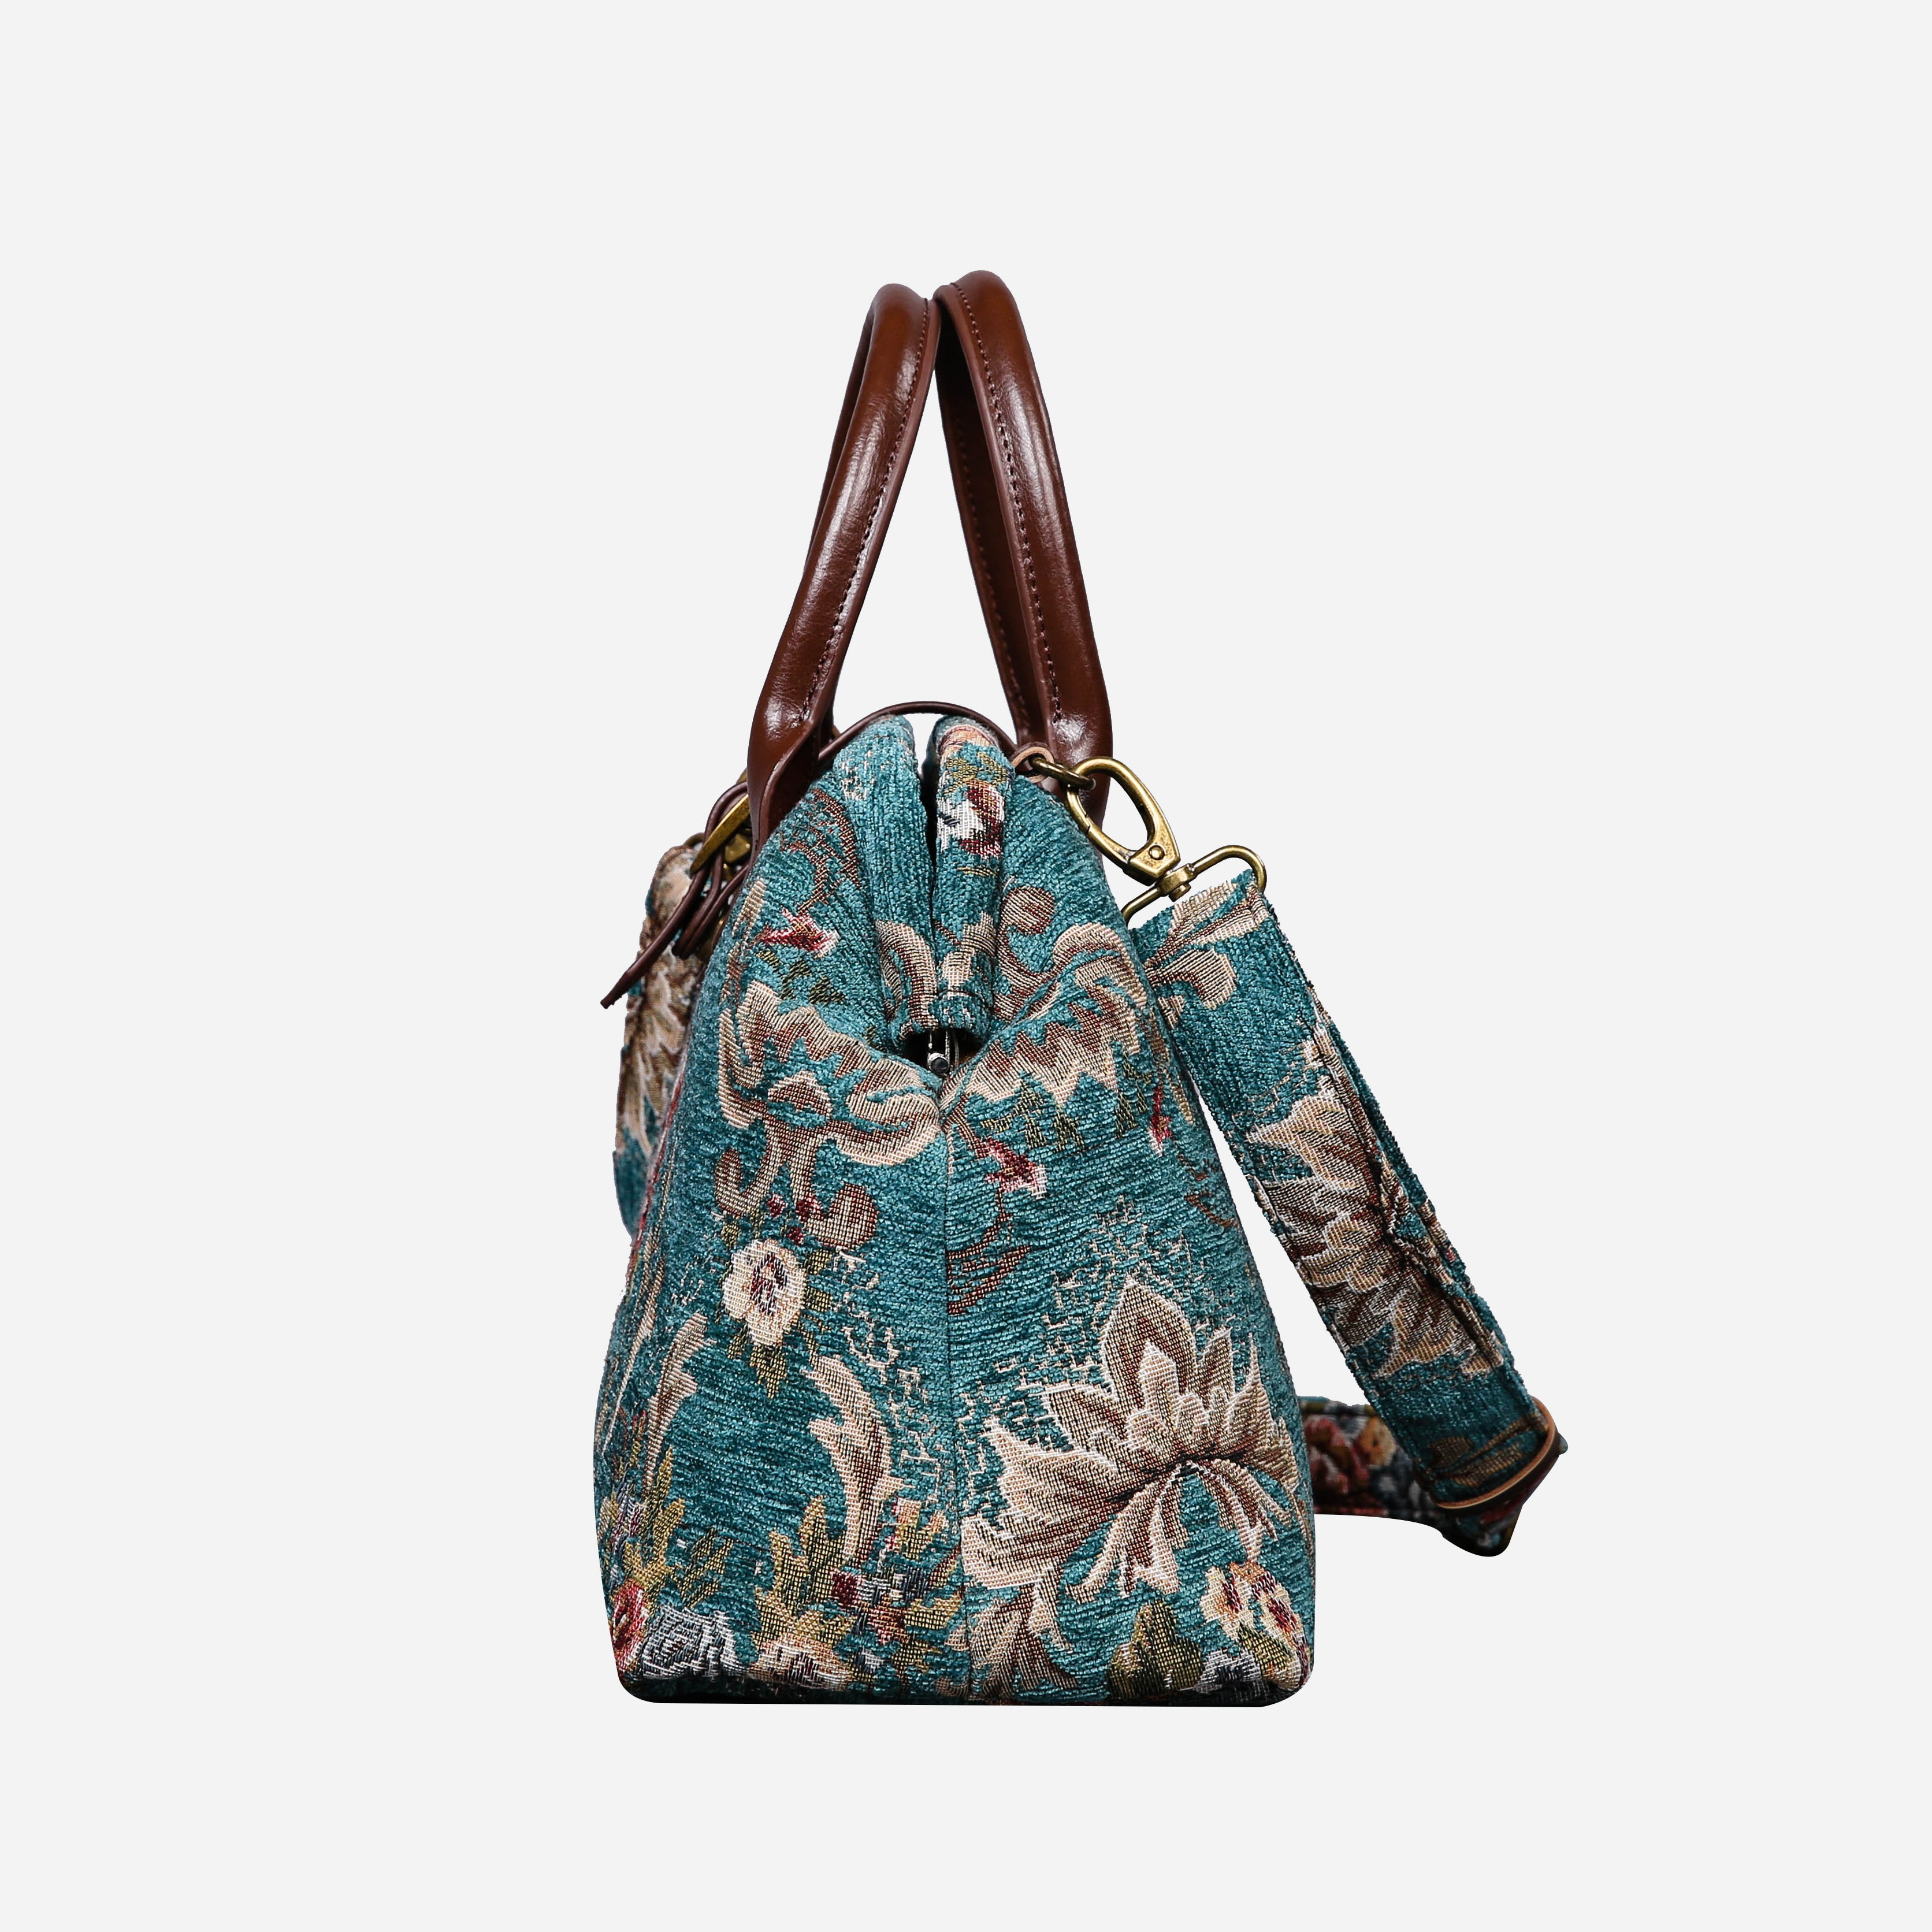 Floral Teal Carpet Handbag Purse carpet bag MCW Handmade-4